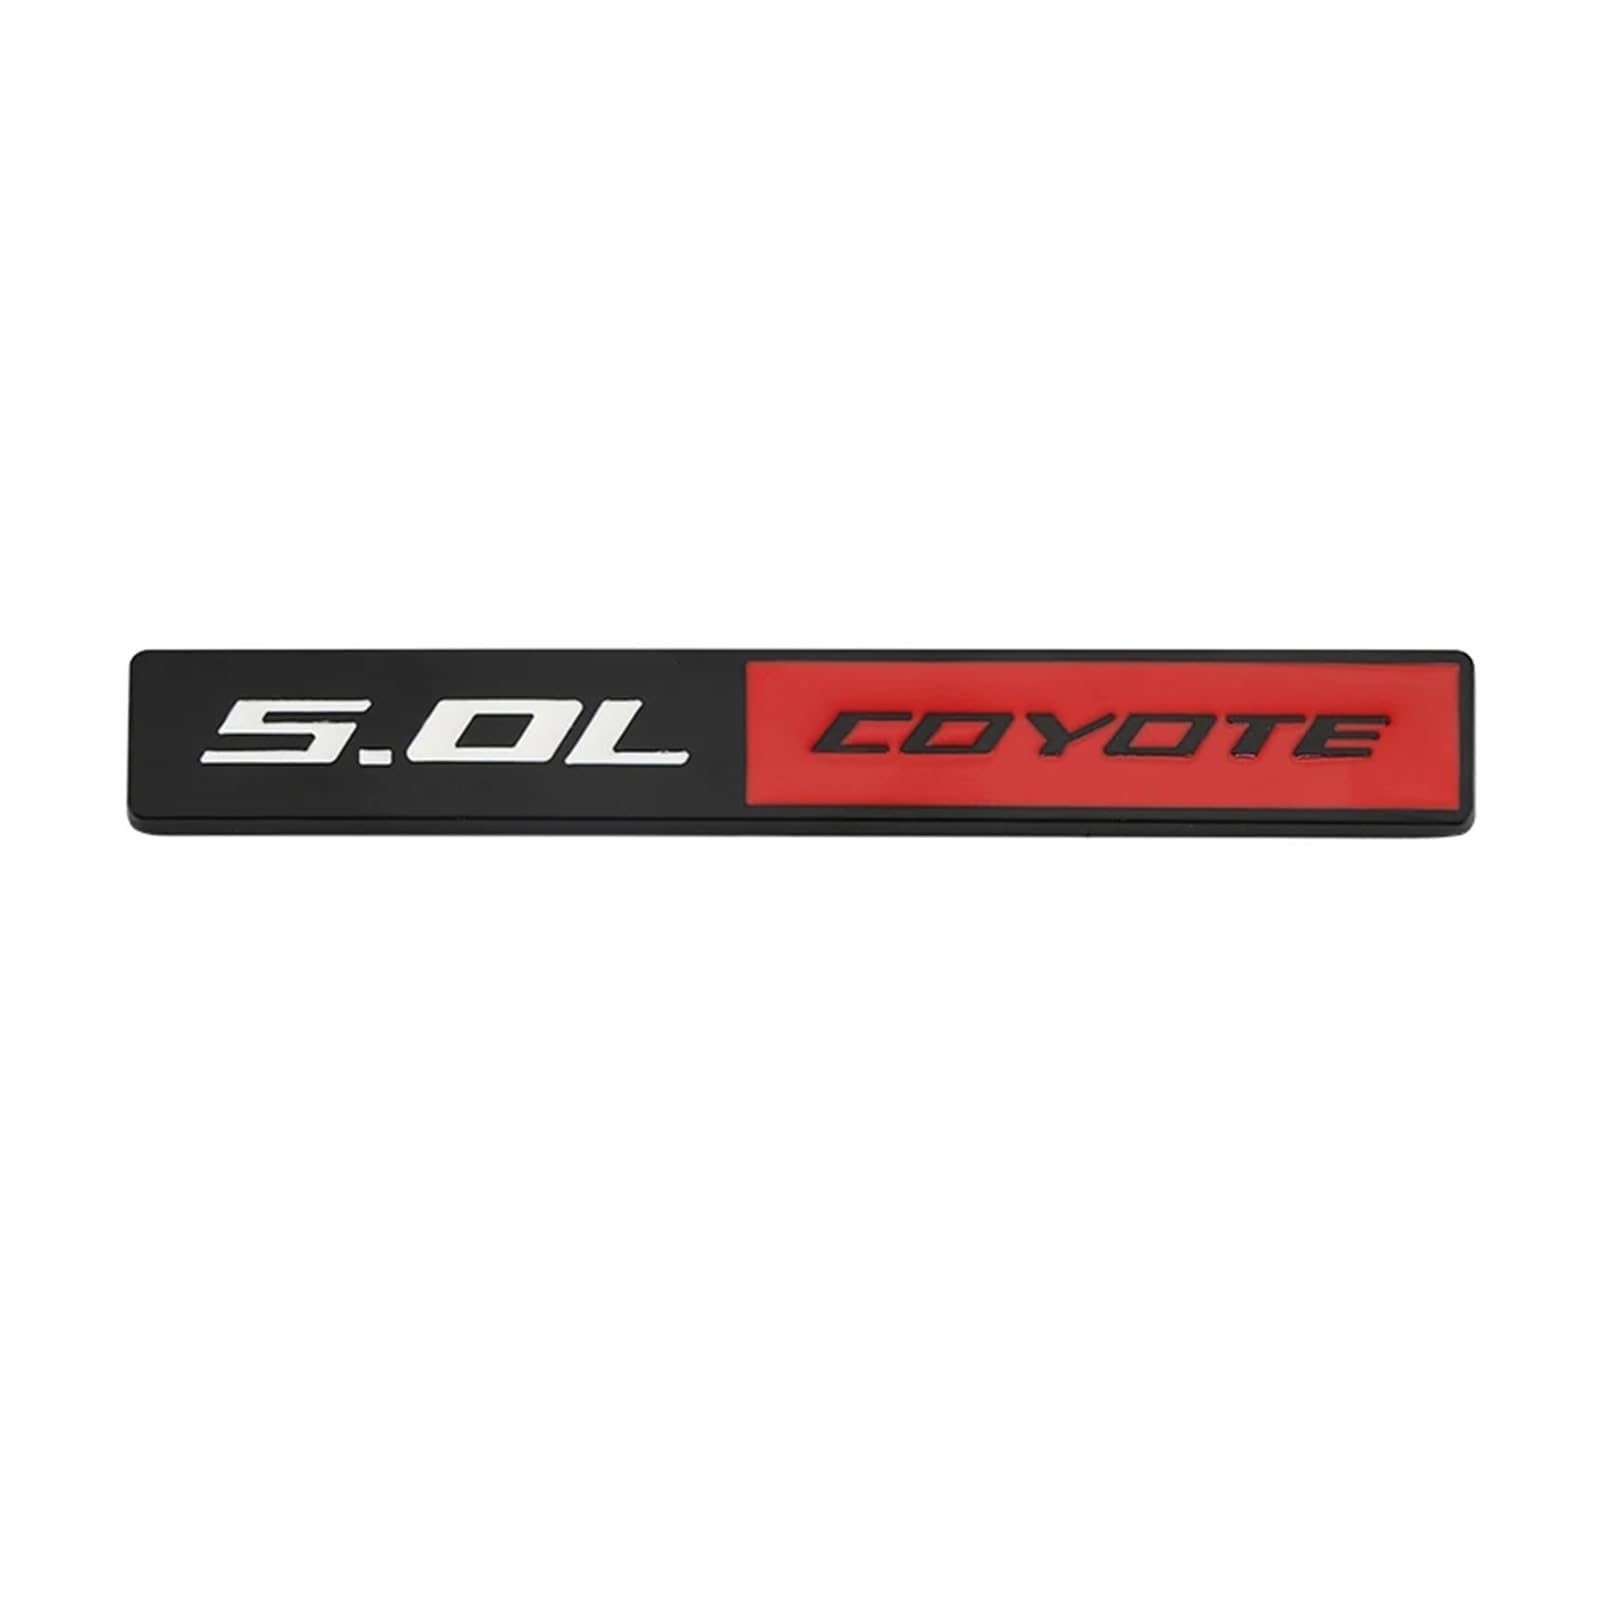 YSRWTBBA 3D-Autoaufkleber, 5,0 l Coyote-Logo, Zierleiste for die Motorhaube, Kühlergrill, Emblem, Abzeichen, Autoaufkleber, kompatibel mit 5,0 l Coyote, einfach abziehen und ab von YSRWTBBA